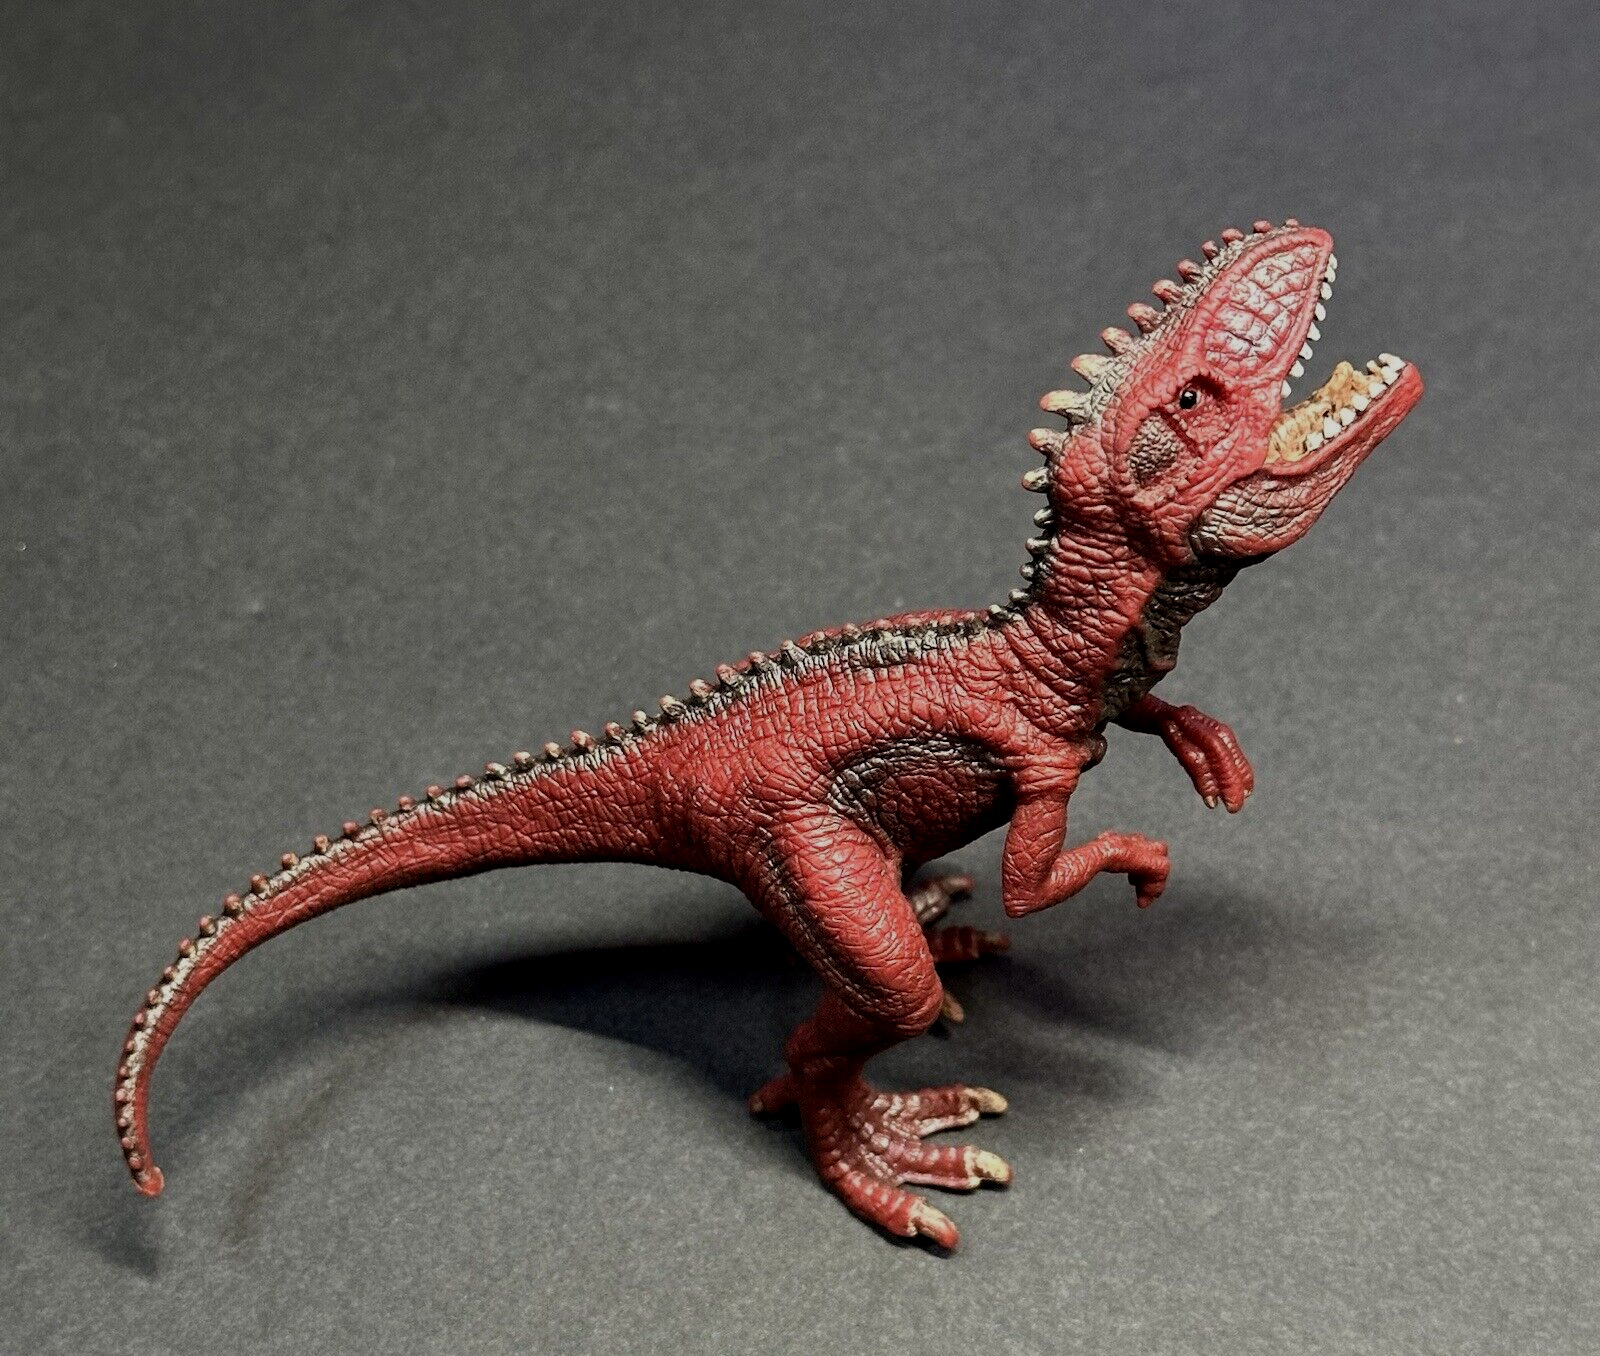 SCHLEICH 14548 Giganotosaurus Red Small Dinosaur Figurine Toy - RETIRED EUC